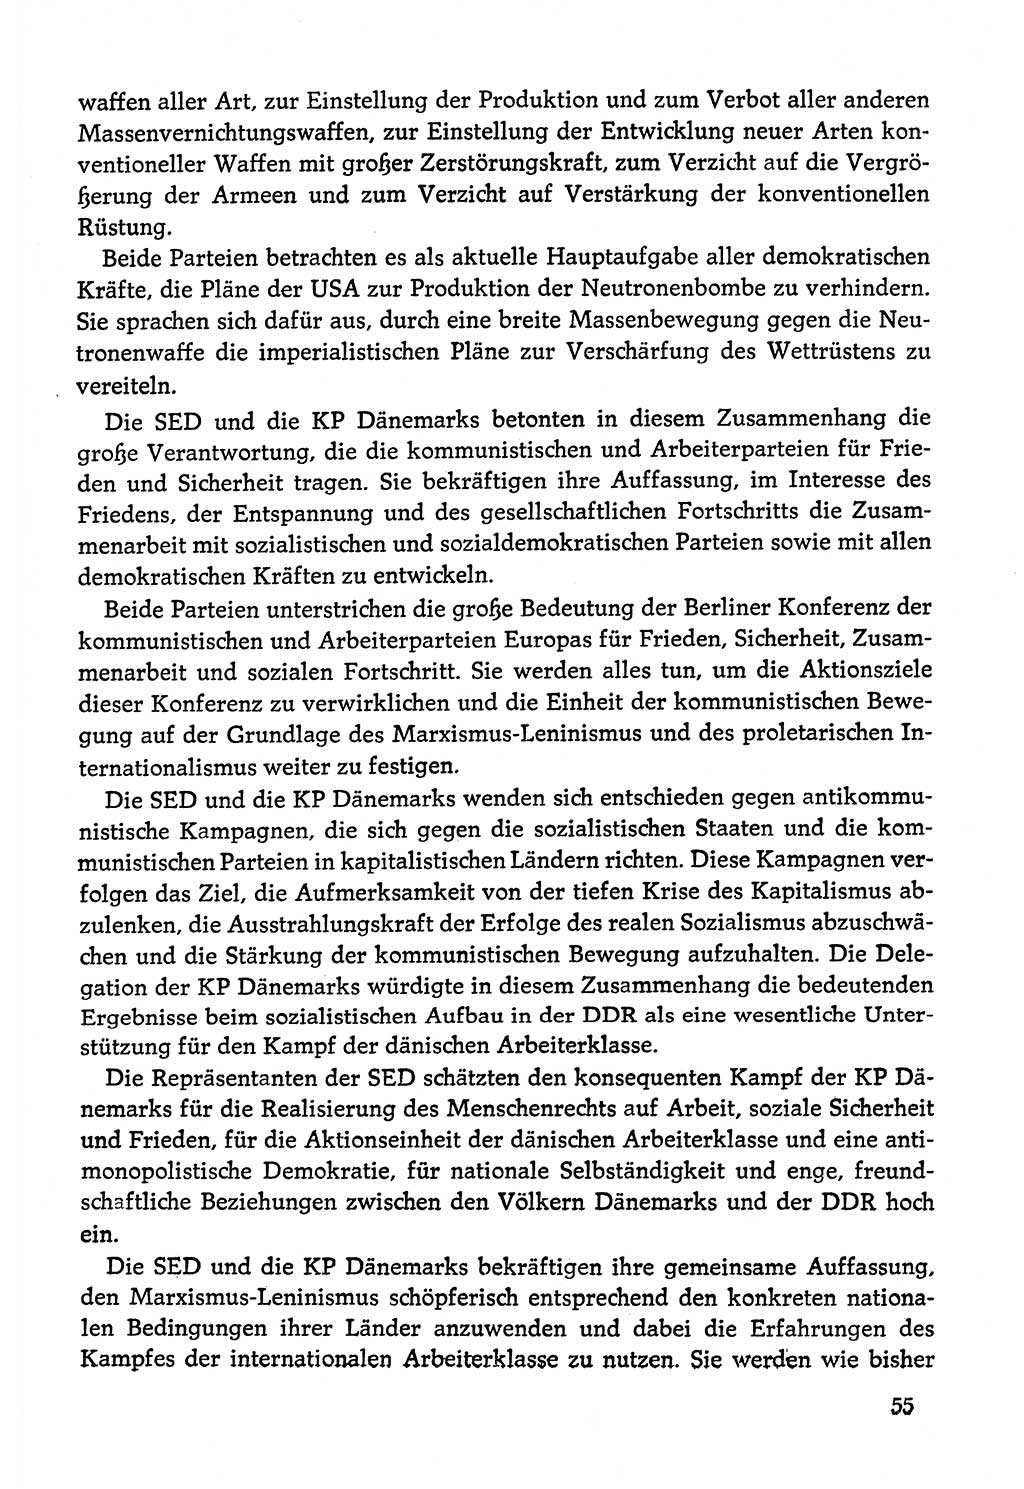 Dokumente der Sozialistischen Einheitspartei Deutschlands (SED) [Deutsche Demokratische Republik (DDR)] 1978-1979, Seite 55 (Dok. SED DDR 1978-1979, S. 55)